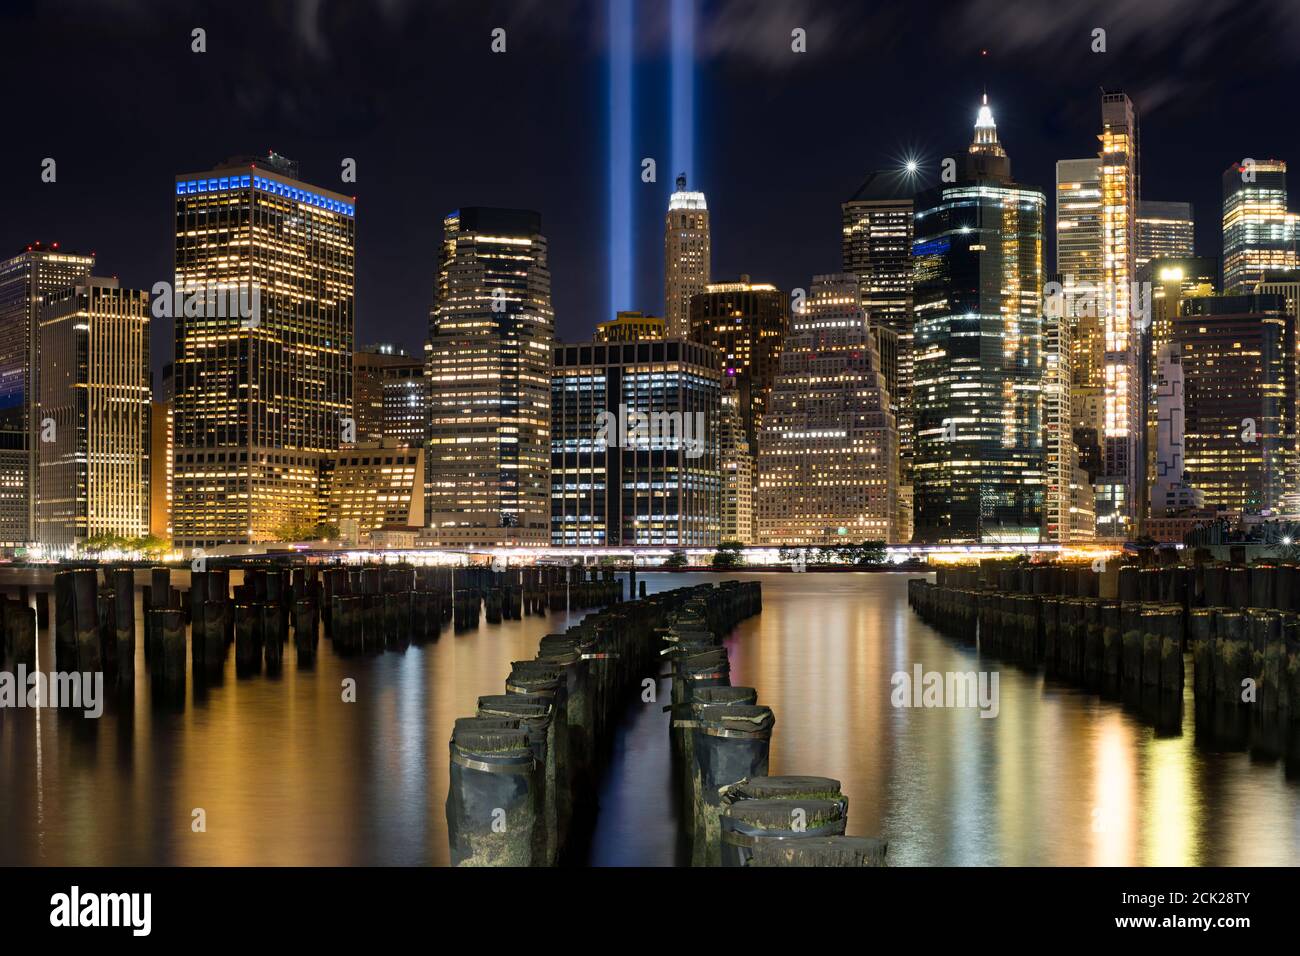 9/11 Tribute im Licht. Lower Manhattan bei Nacht beleuchtet. Blick vom Brooklyn Bridge Park - Pier 1. Stockfoto